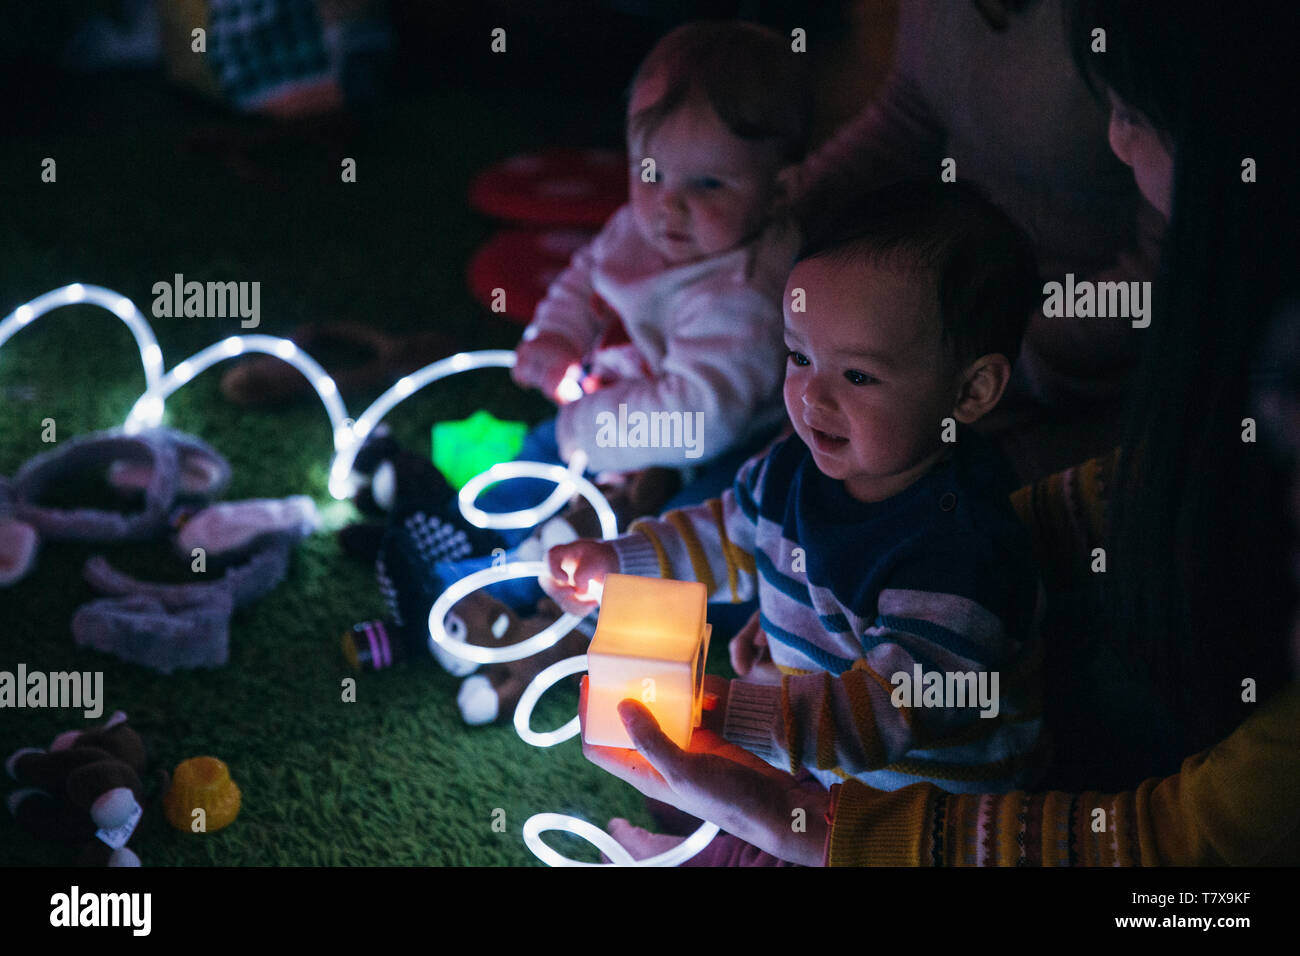 Nahaufnahme eines jungen Spaß in einer sensorischen Gruppe mit beleuchteten Spielzeug. Stockfoto